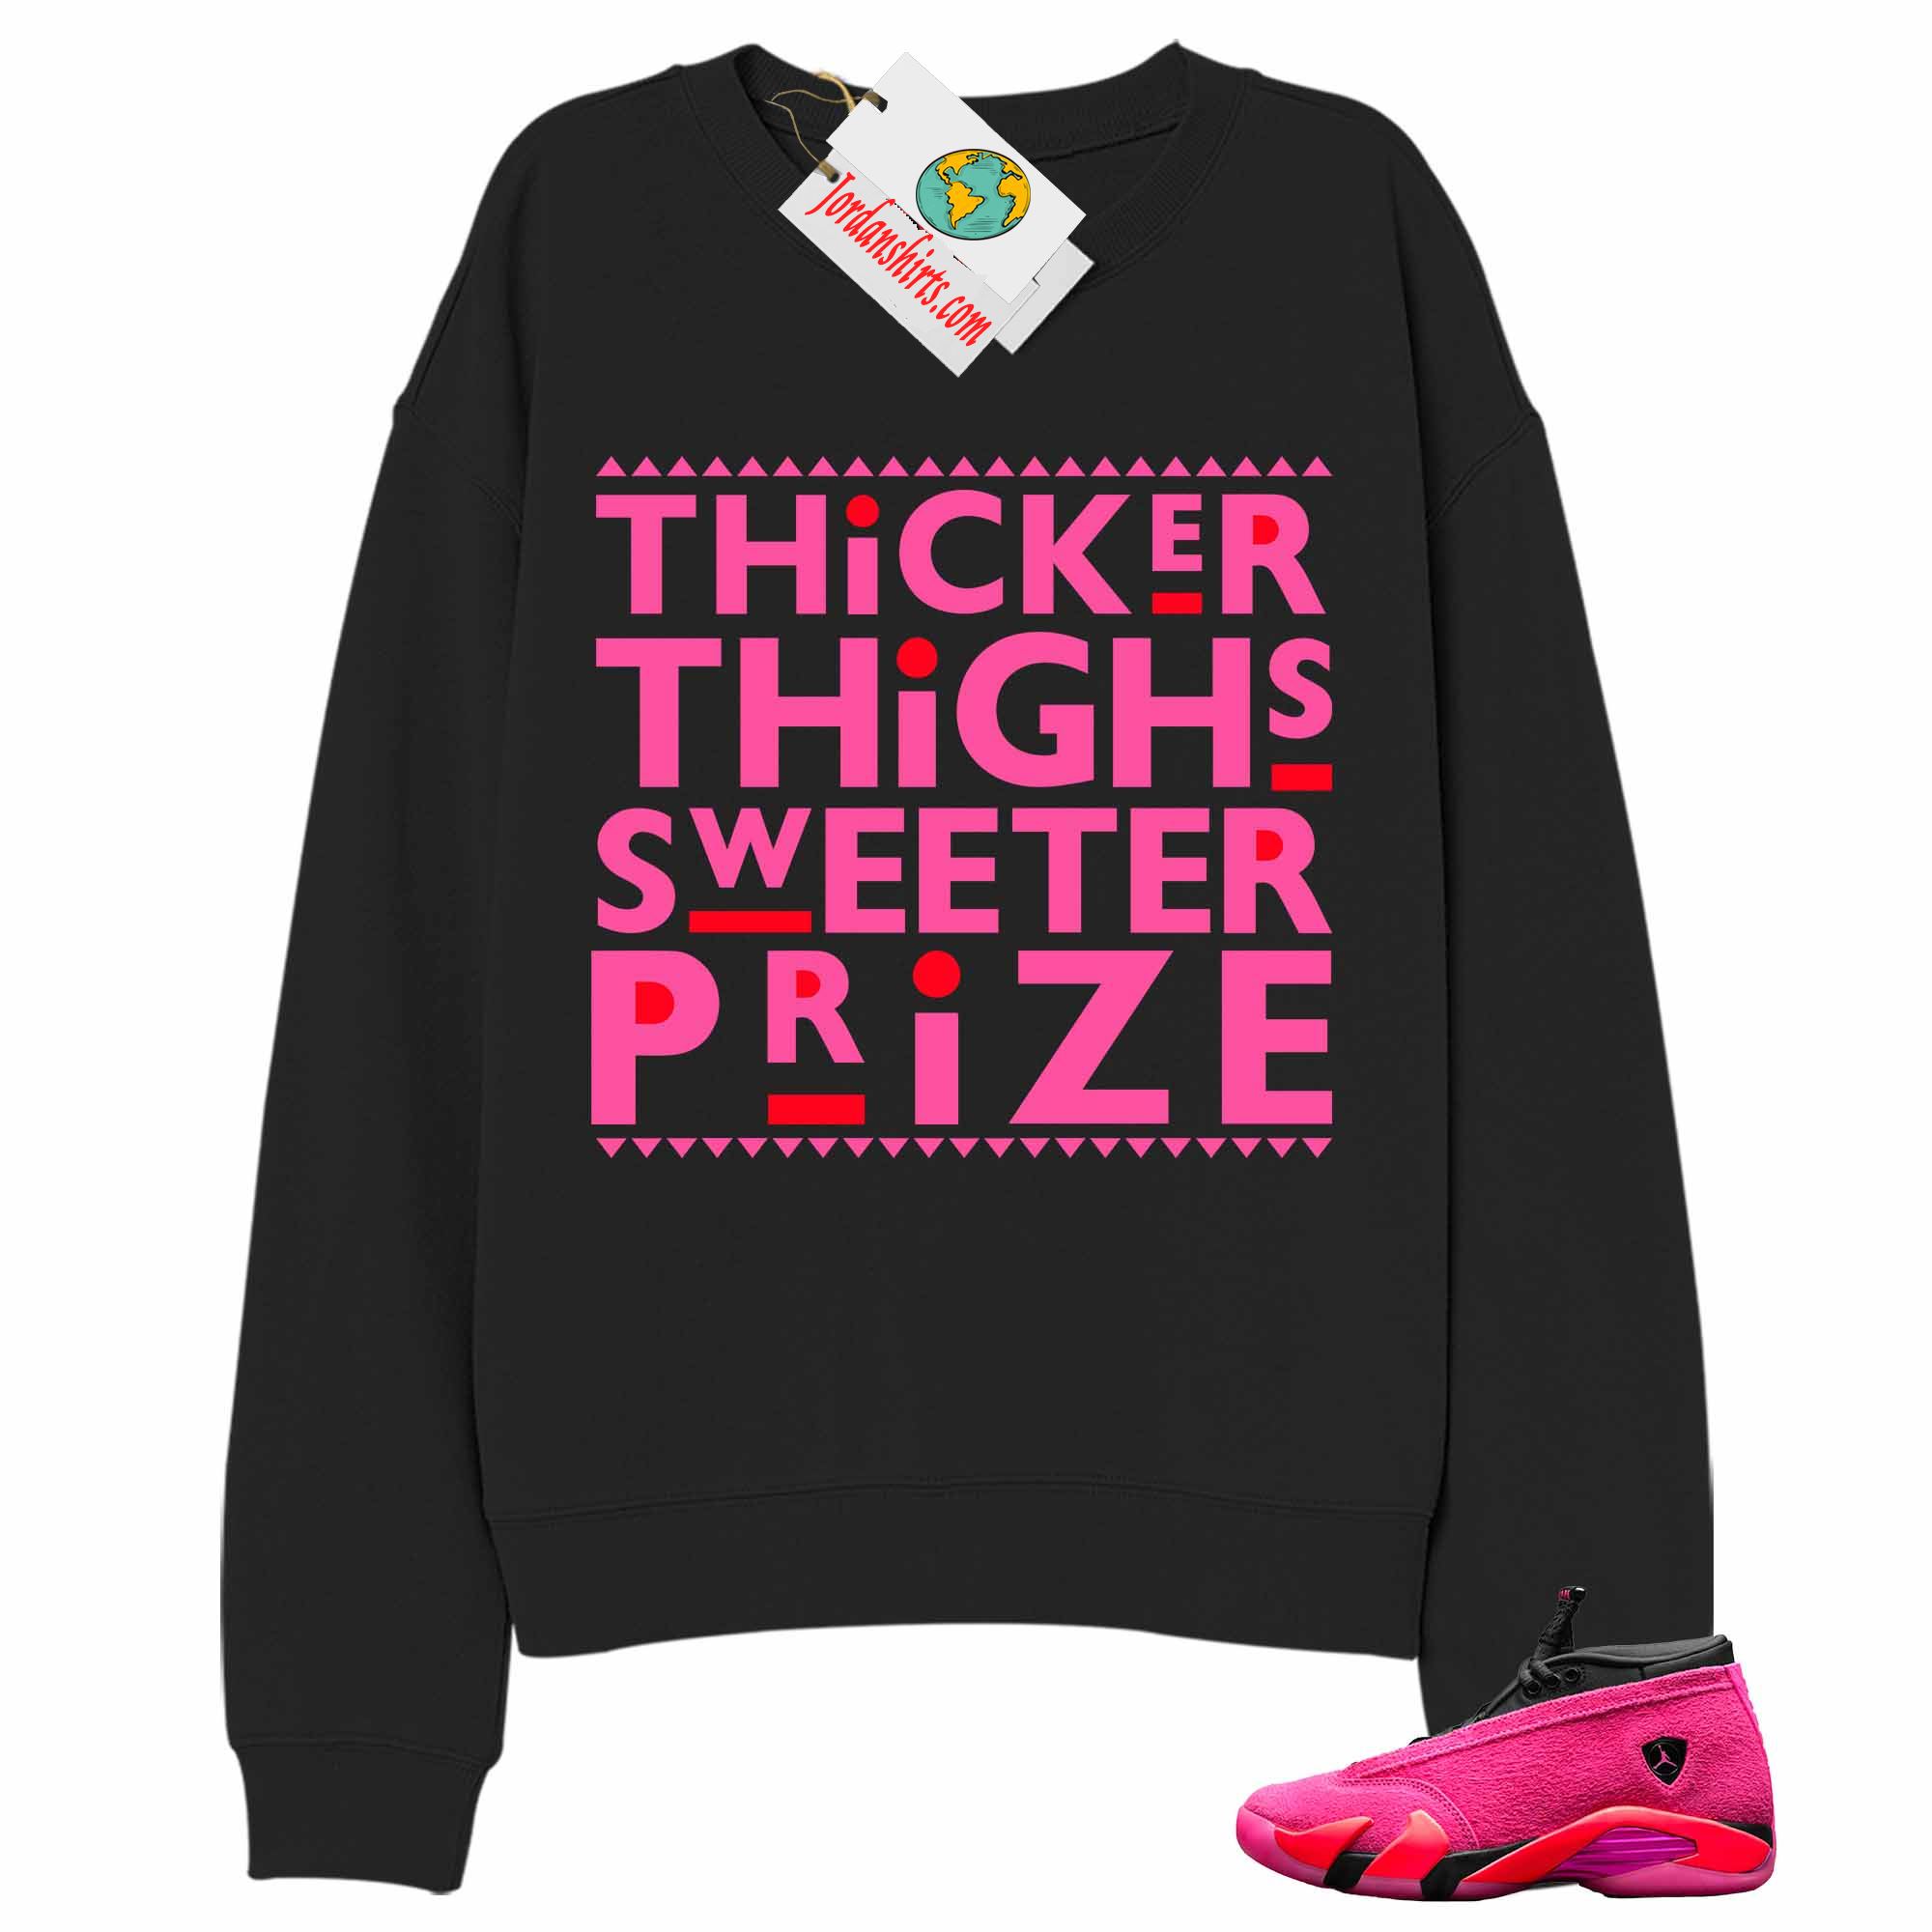 Jordan 14 Sweatshirt, Thicker Thighs Sweeter Prize Black Sweatshirt Air Jordan 14 Wmns Shocking Pink 14s Plus Size Up To 5xl